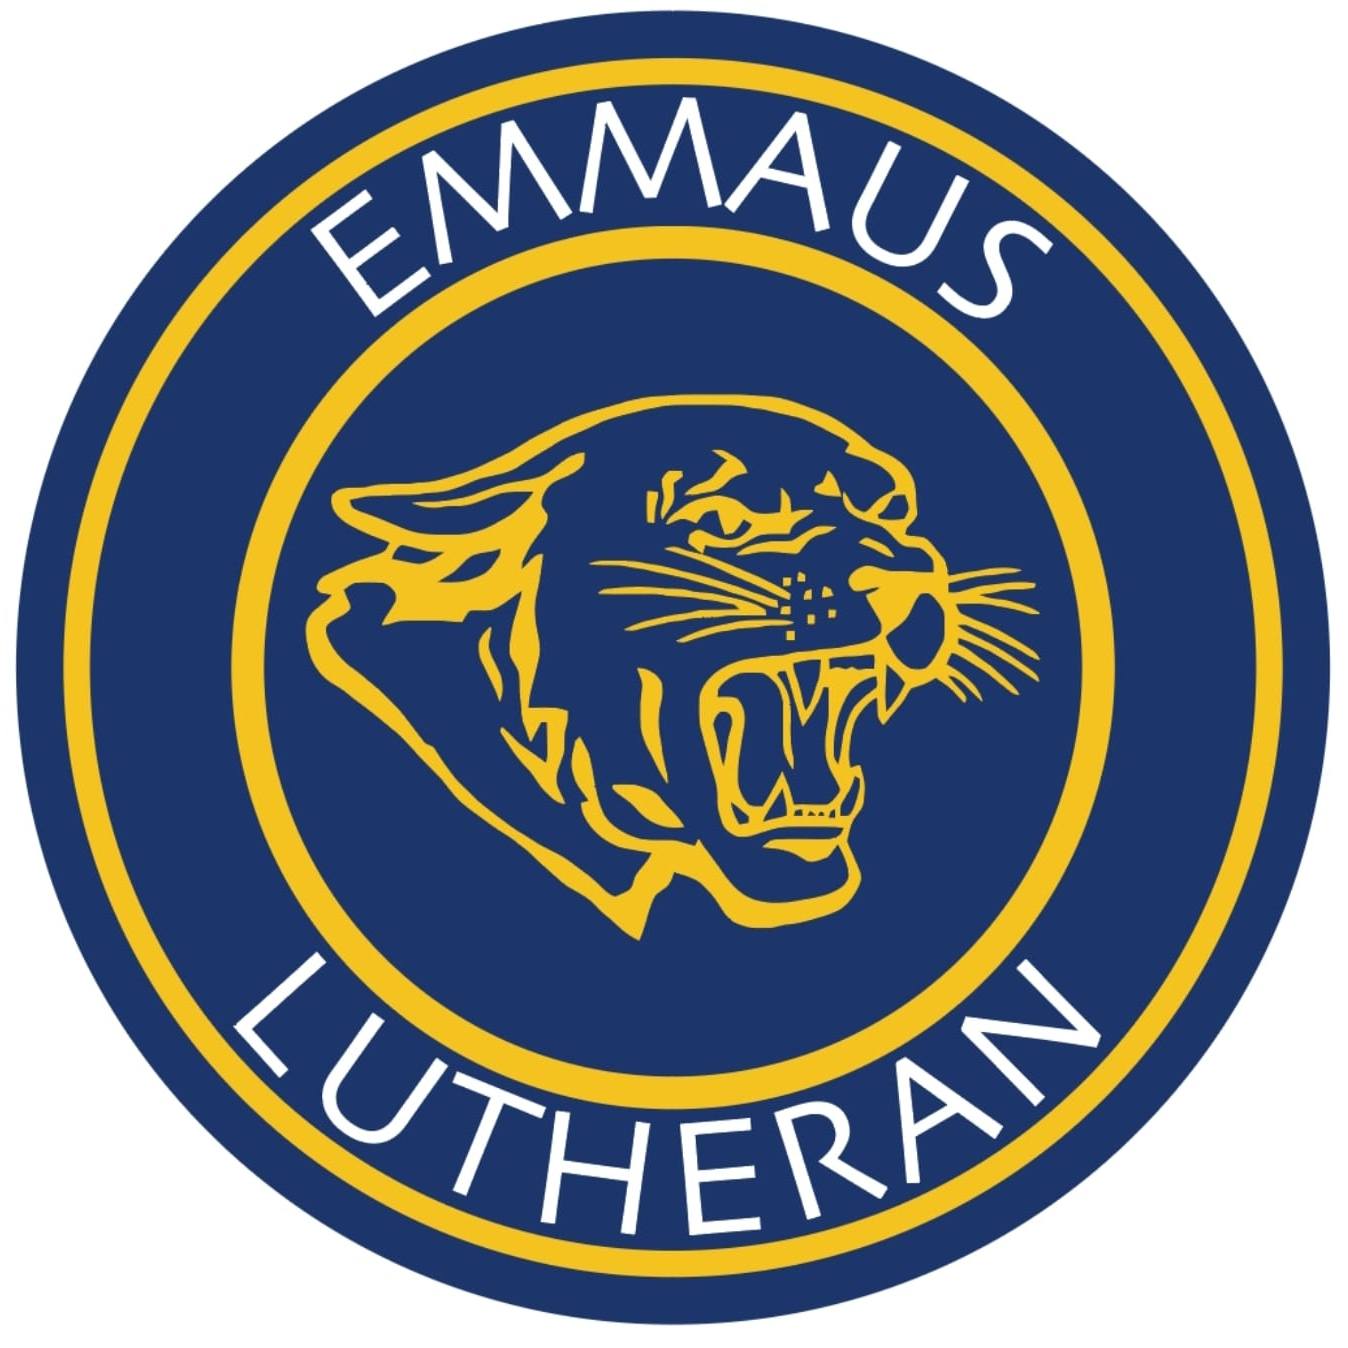 Emmaus Lutheran Food Pantry